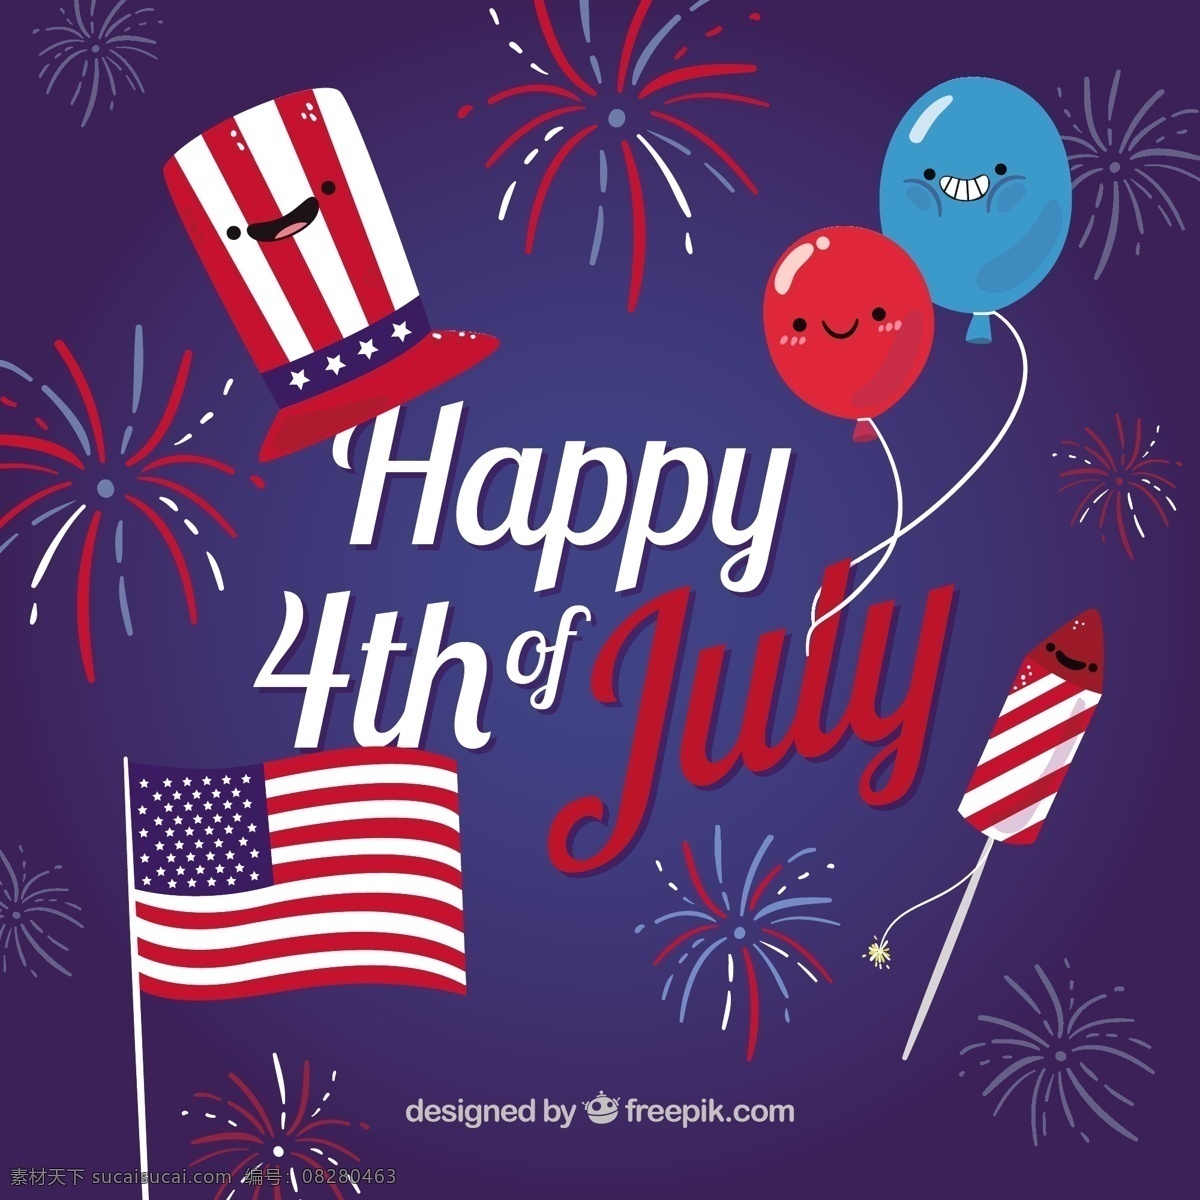 漂亮 气球 烟花 美国 独立日 背景 漂亮的 美国独立日